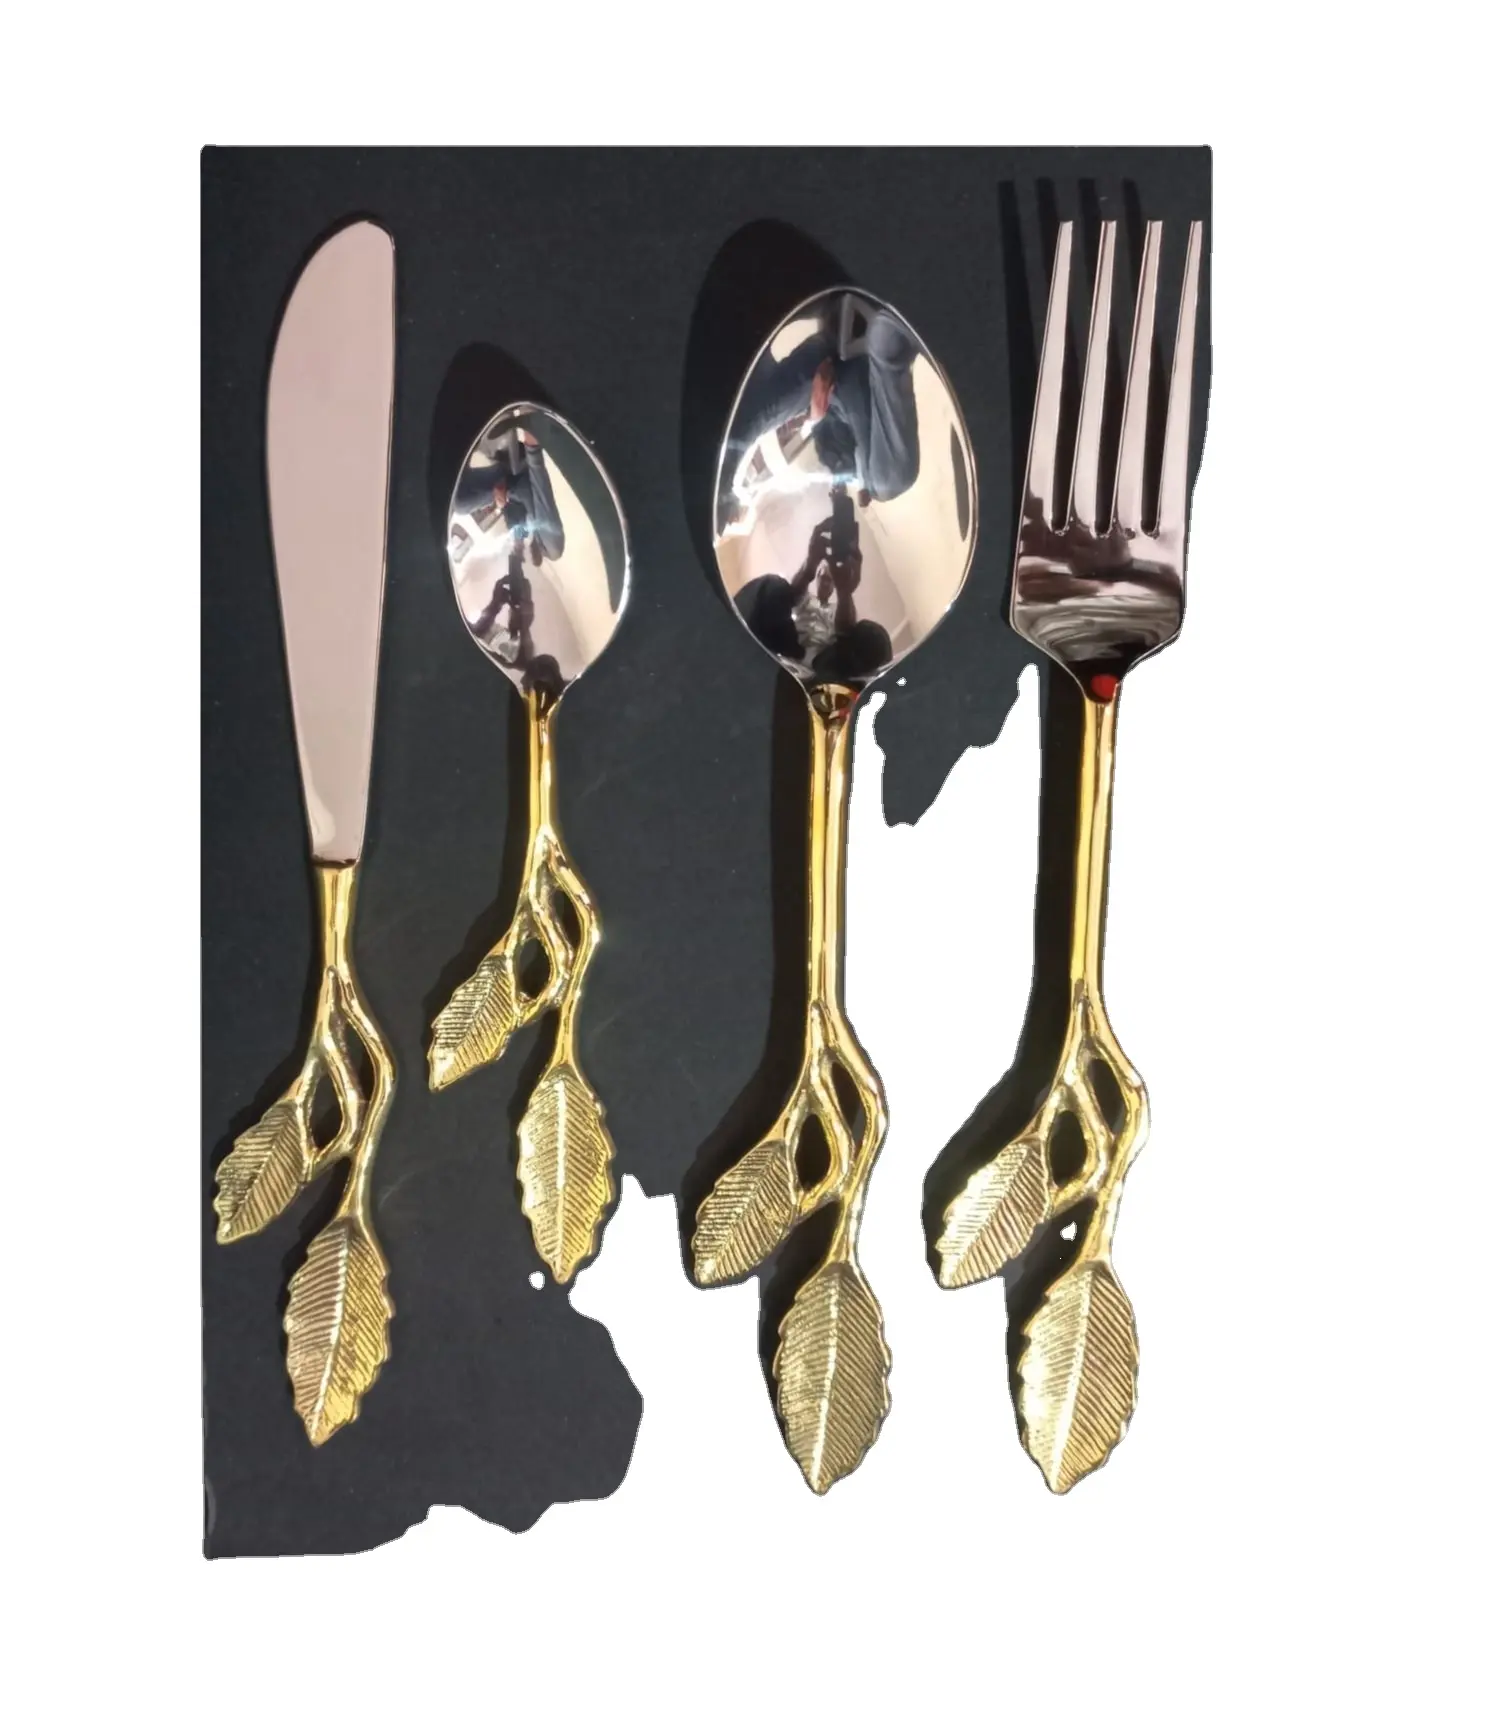 مجموعة أدوات مائدة نحاسية فريدة من نوعها مصنوعة يدويًا من الذهب طقم أدوات مائدة للمطبخ